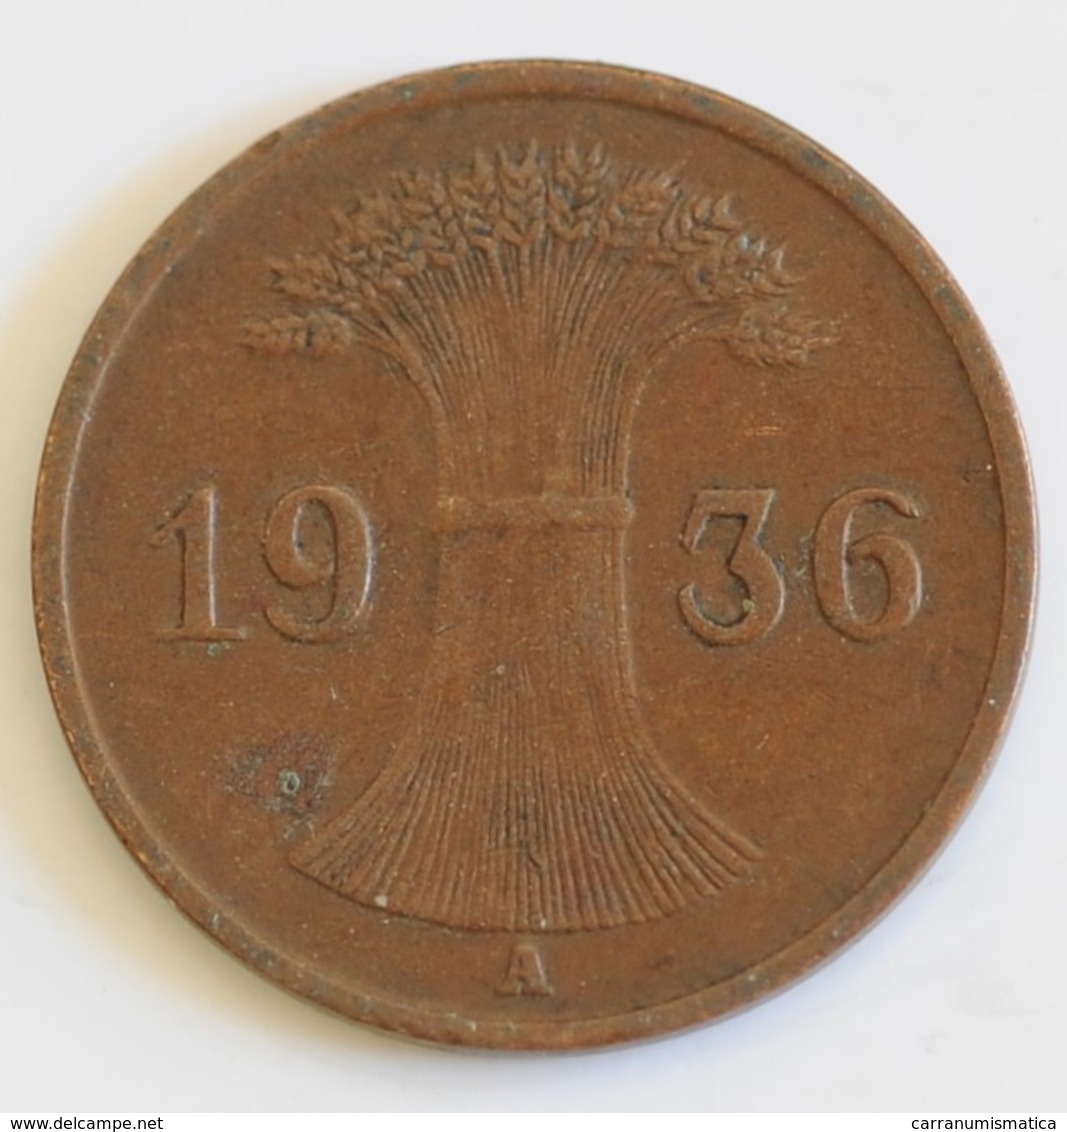 GERMANIA 1 REICHSPFENNIG 1936 - 1 Reichspfennig